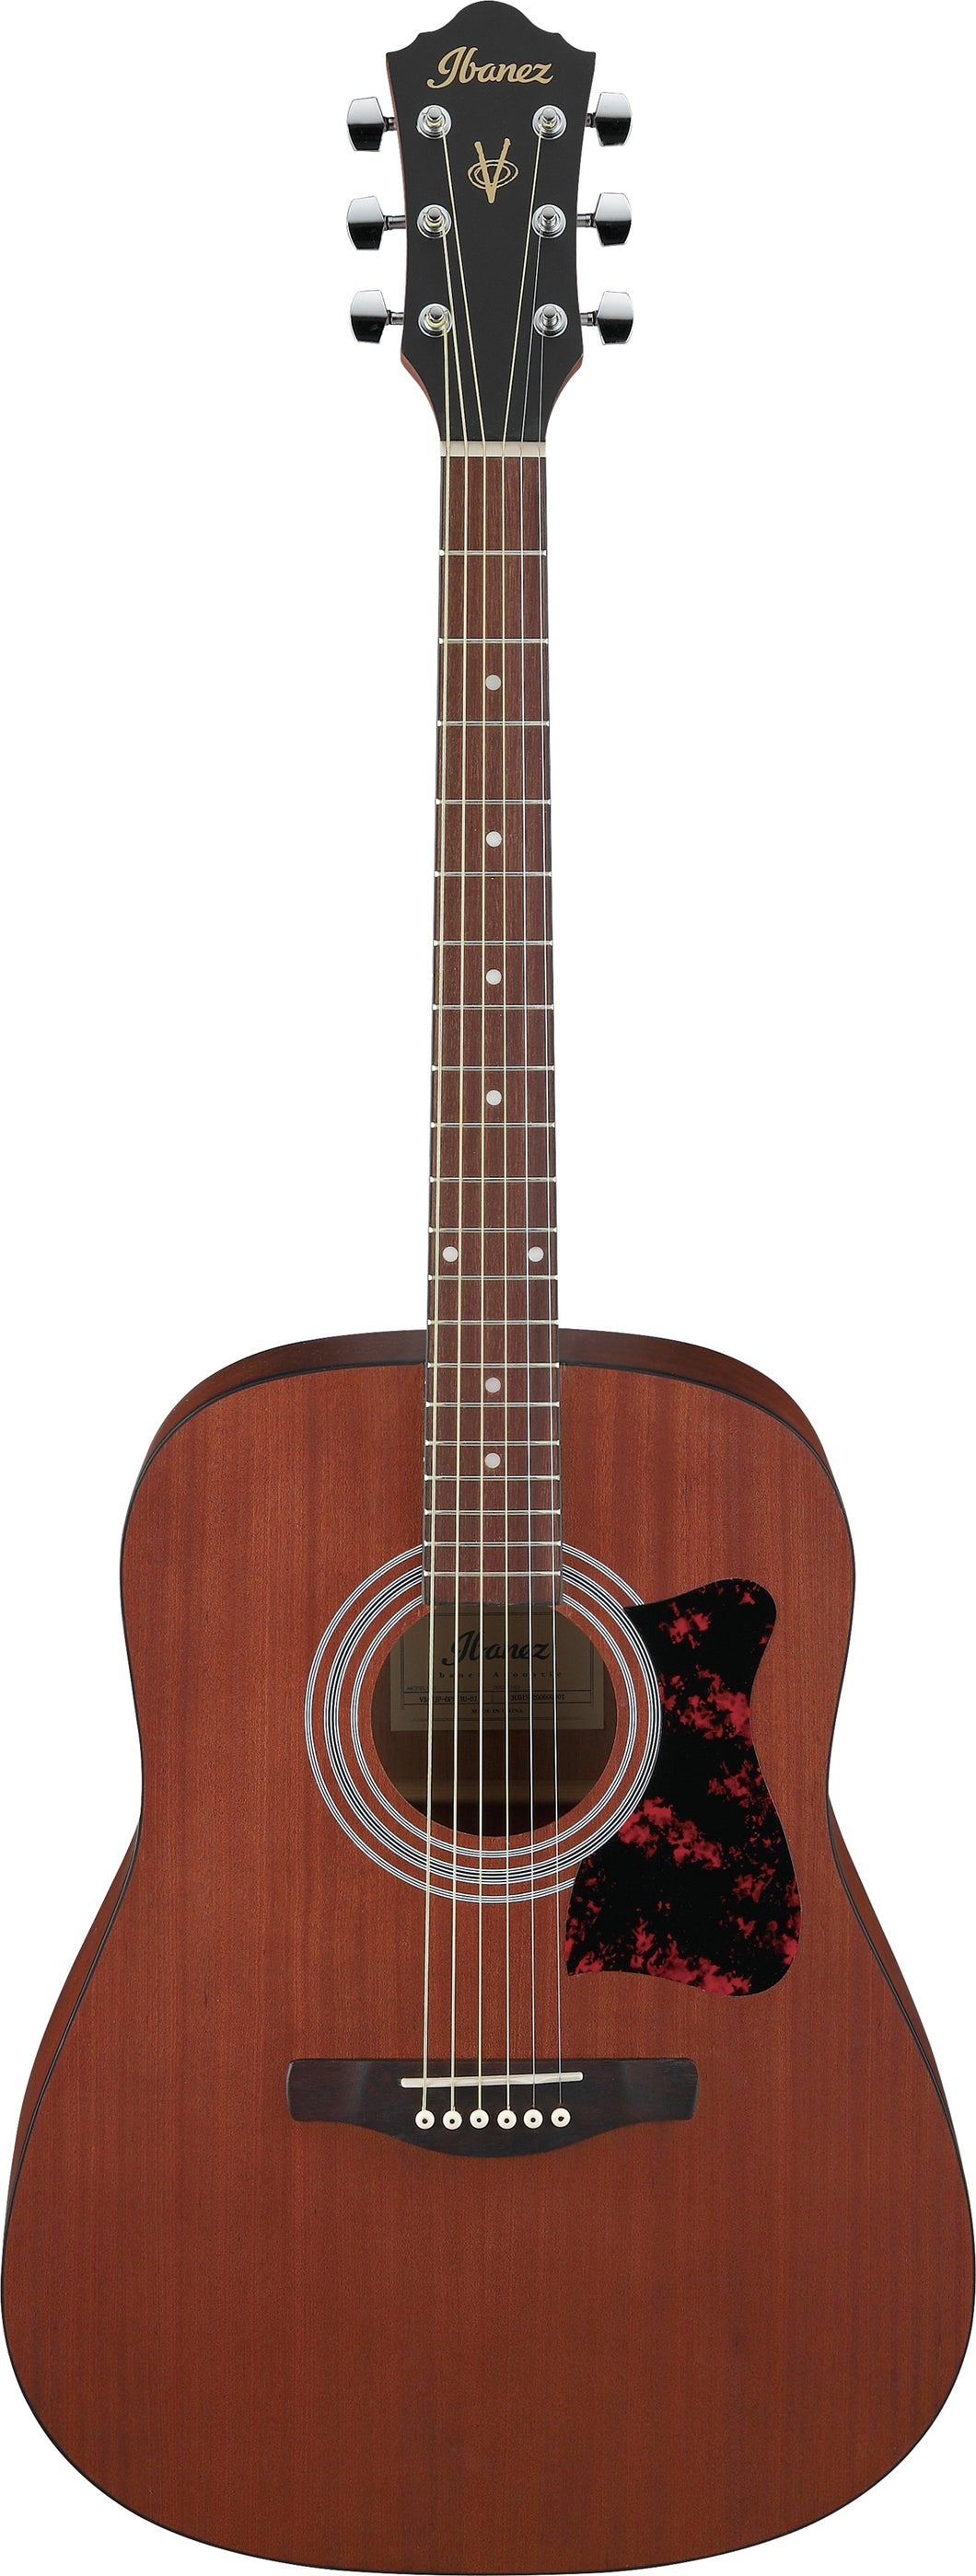 Ibanez V54NJP OPN Jampack Acoustic Guitar